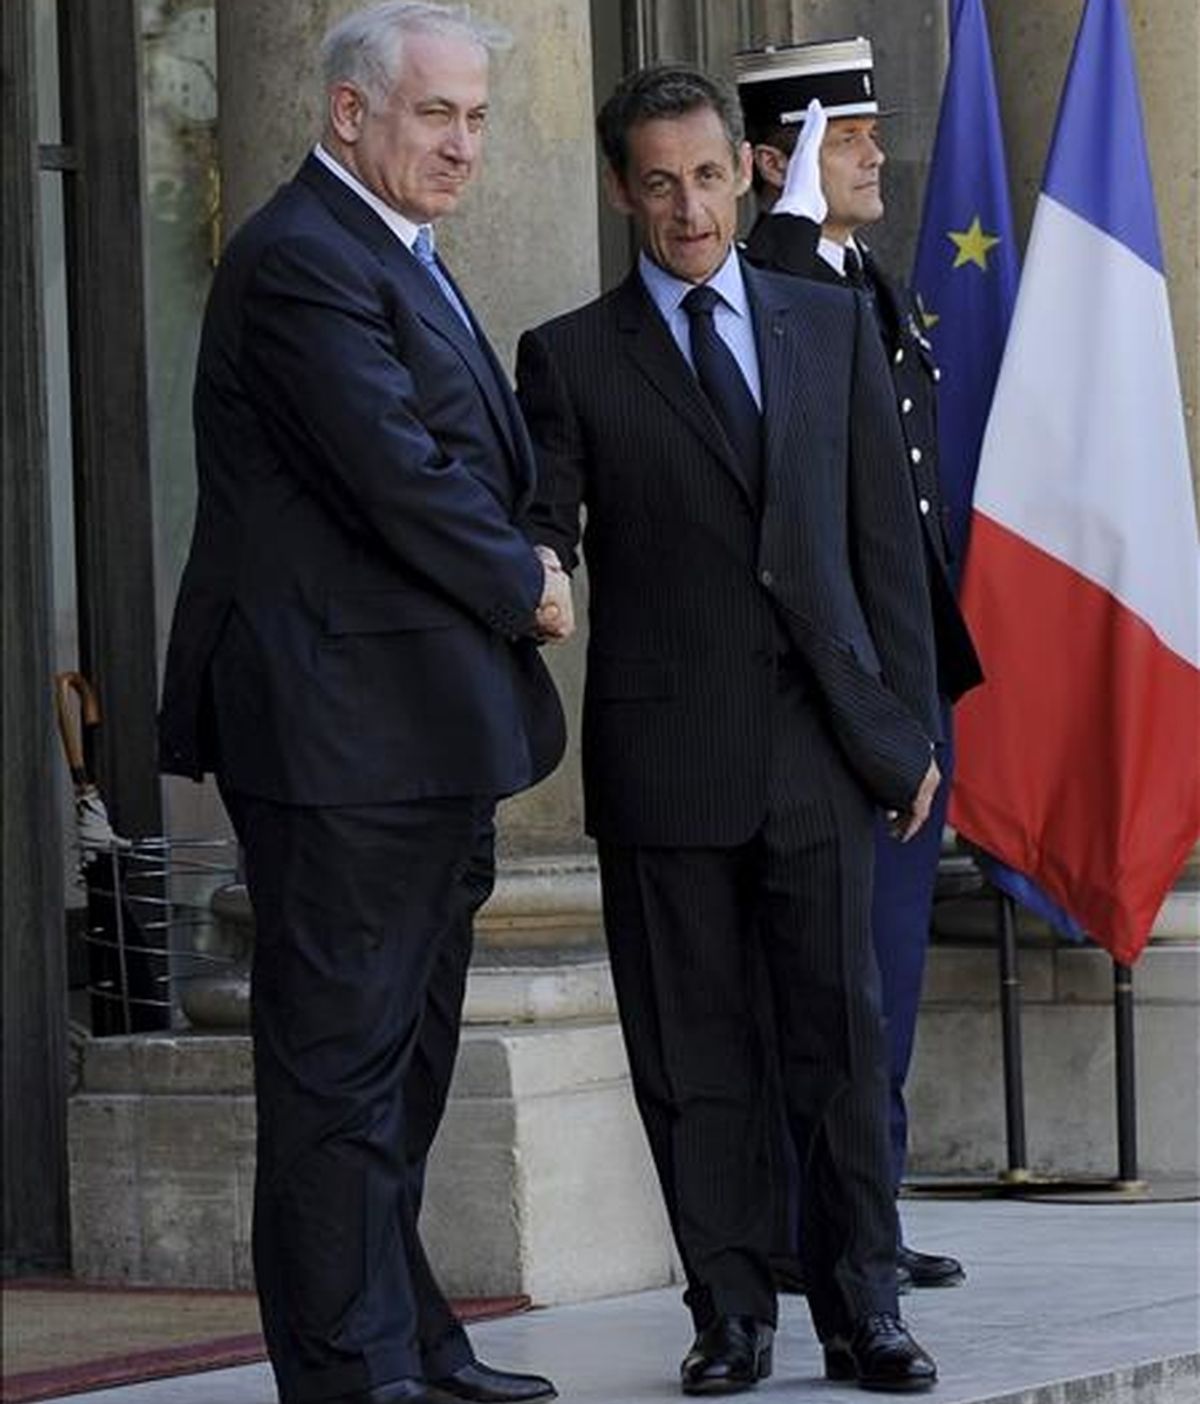 El presidente de Francia, Nicolas Sarkozy, saluda al primer ministro israelí, Benjamin Netanyahu, a su llegada al Palacio del Elíseo. EFE